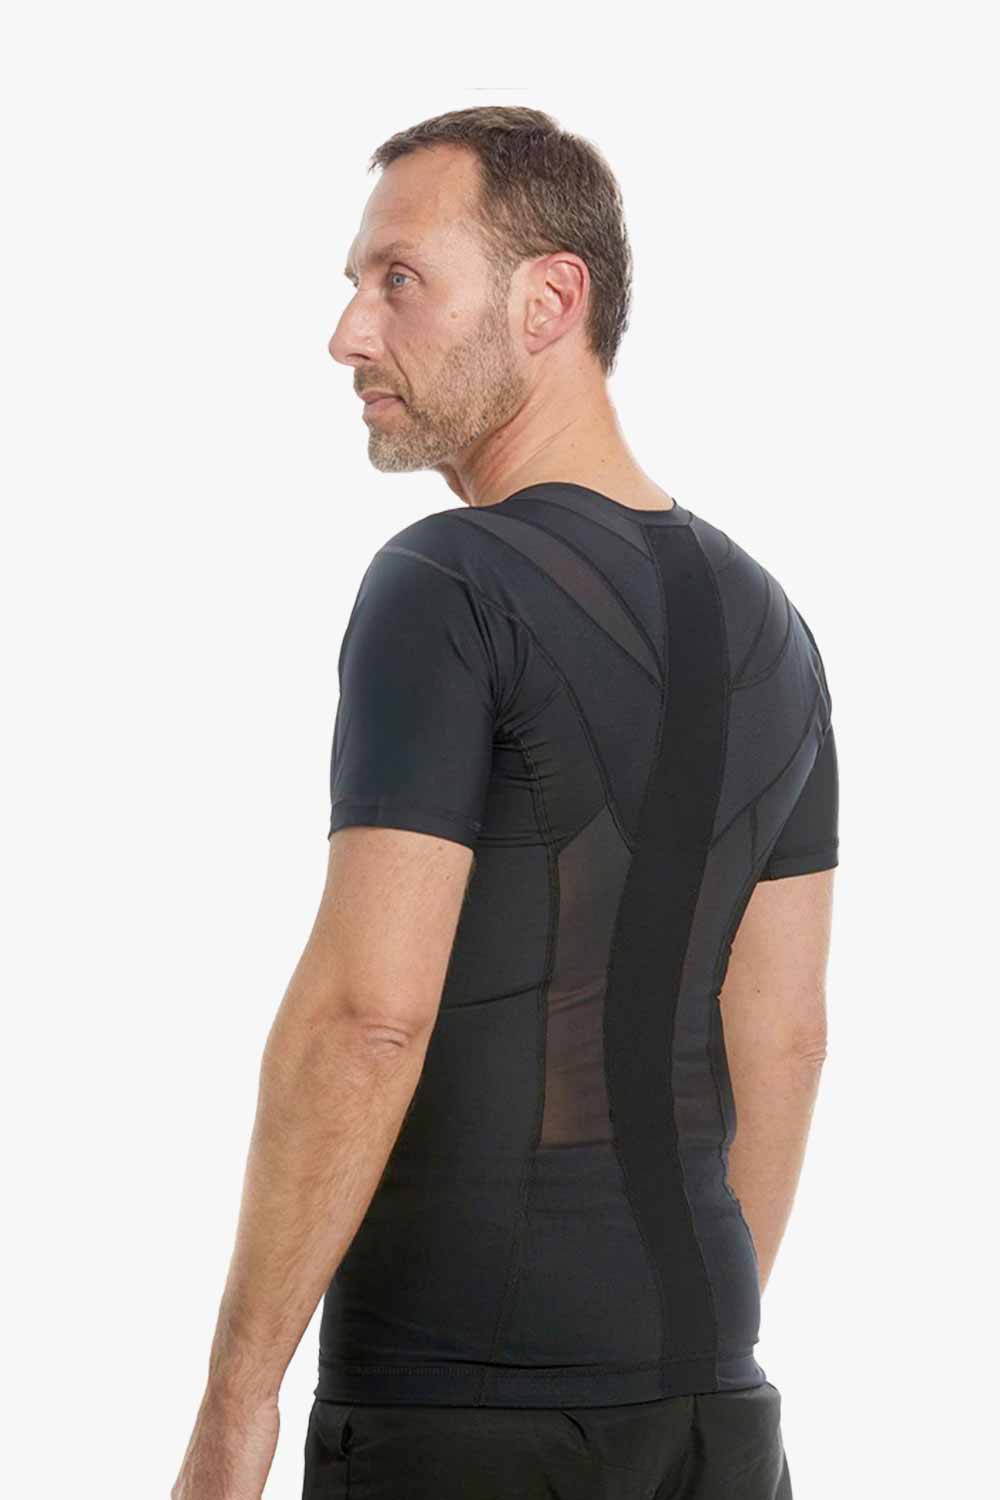 Men's Posture Shirt™ Zipper - Black